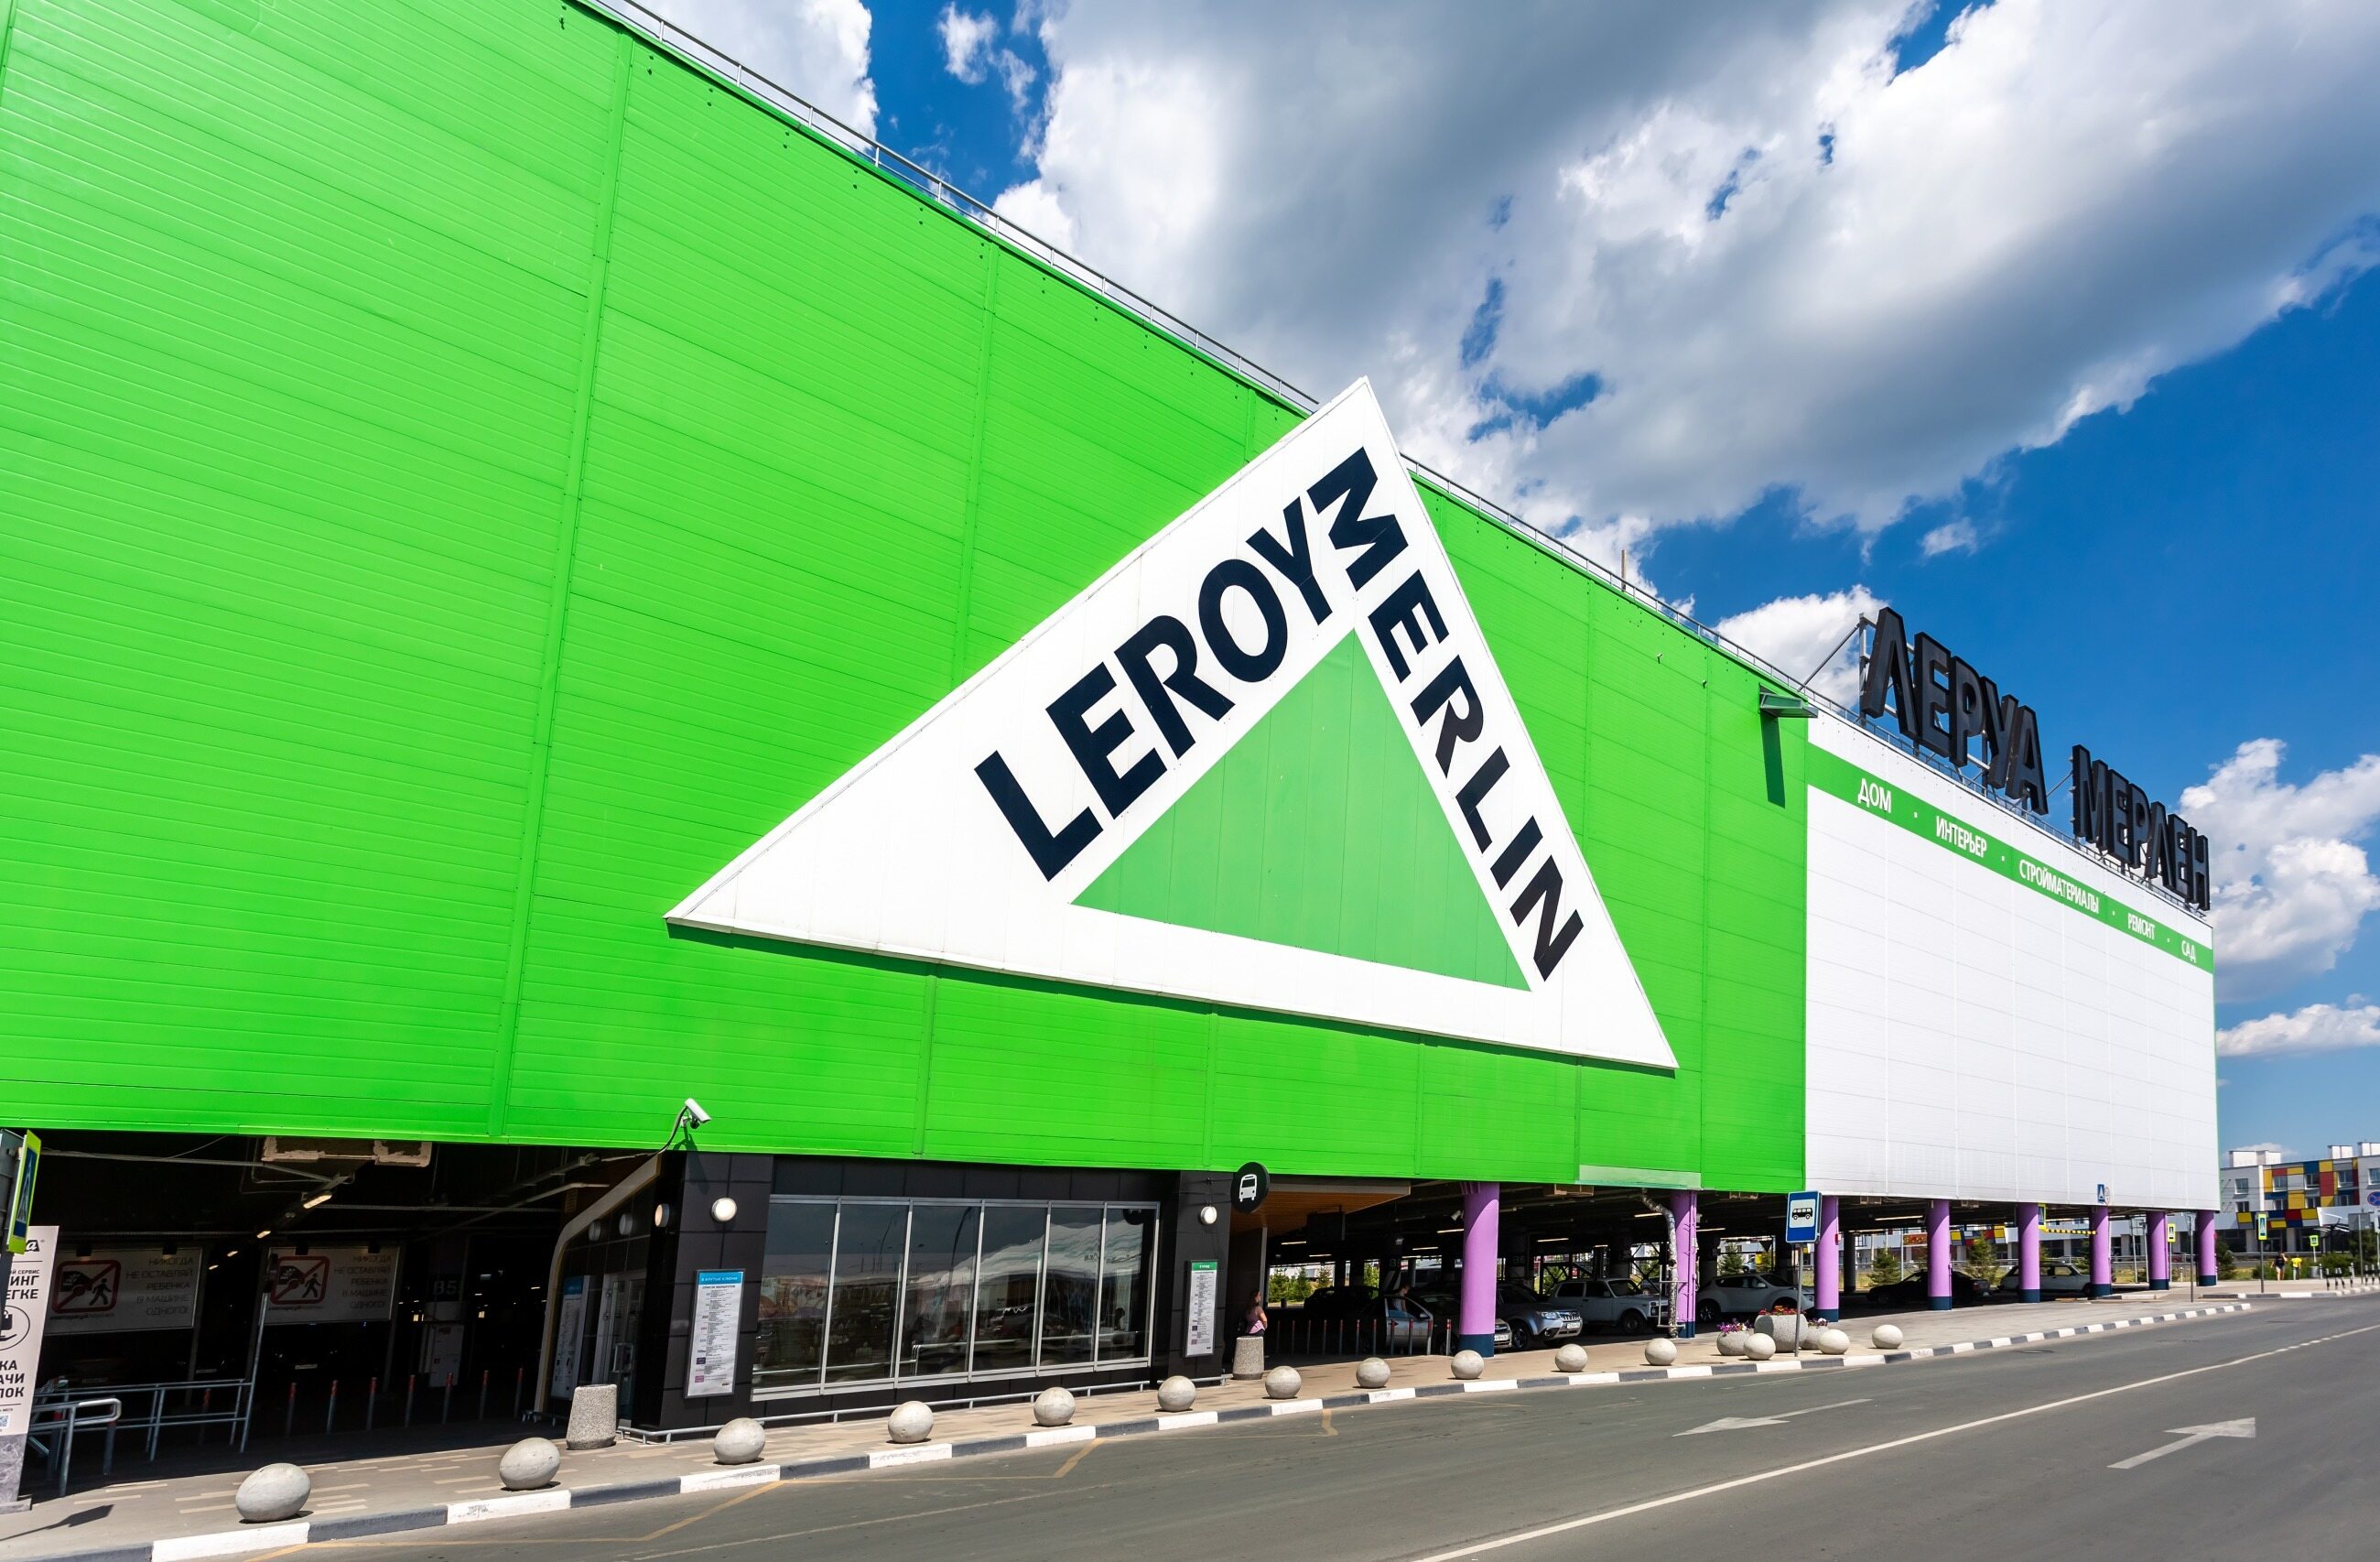 Leroy Merlin to market oferujący sprzęt z szeroko rozumianej branży budowlanej. A jego nazwę poprawnie wymawiamy: